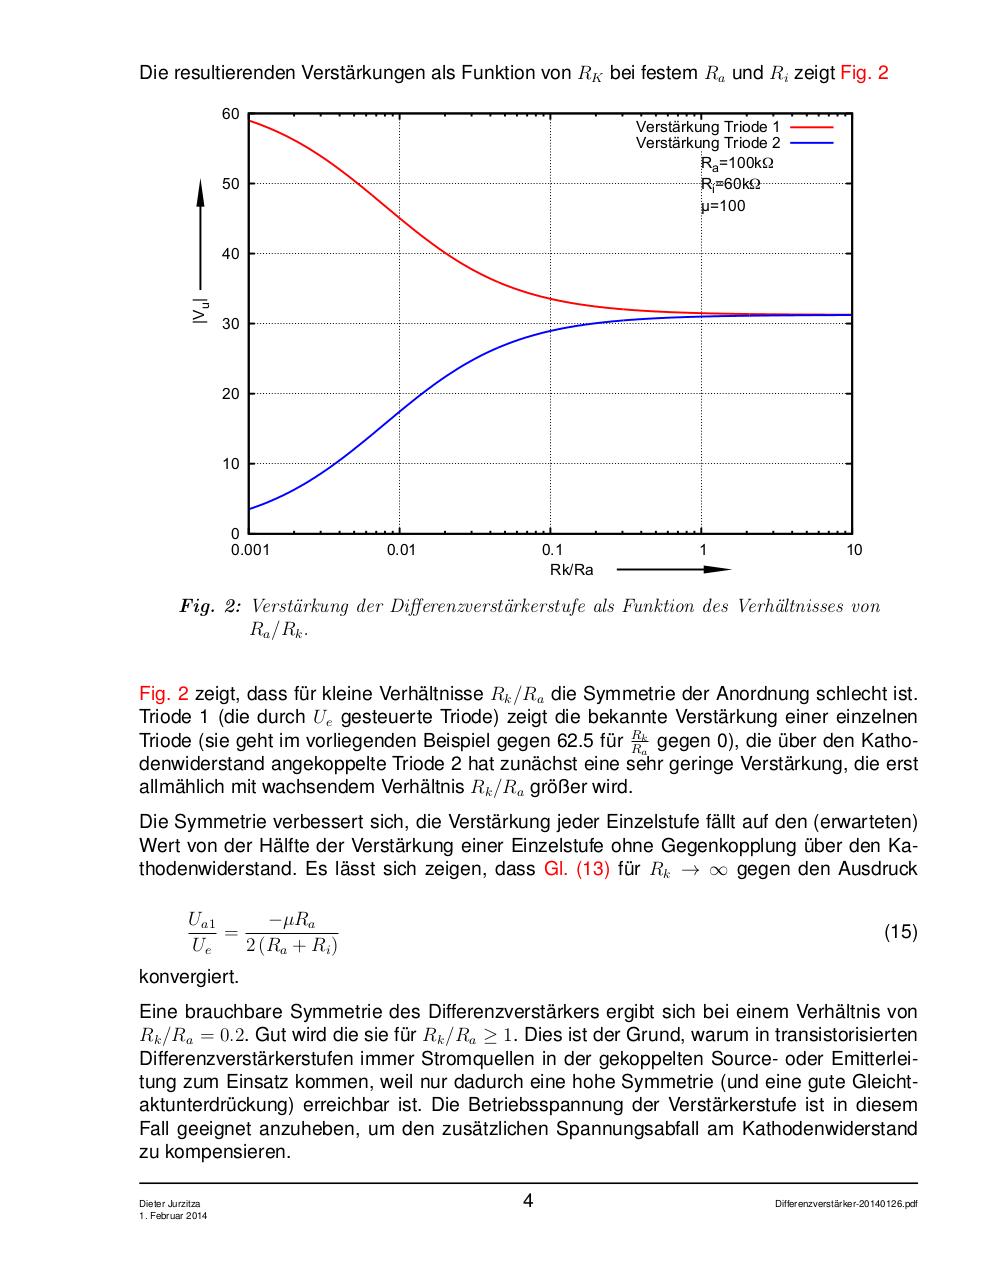 Differenzverstaerker-20140126.pdf - page 4/7